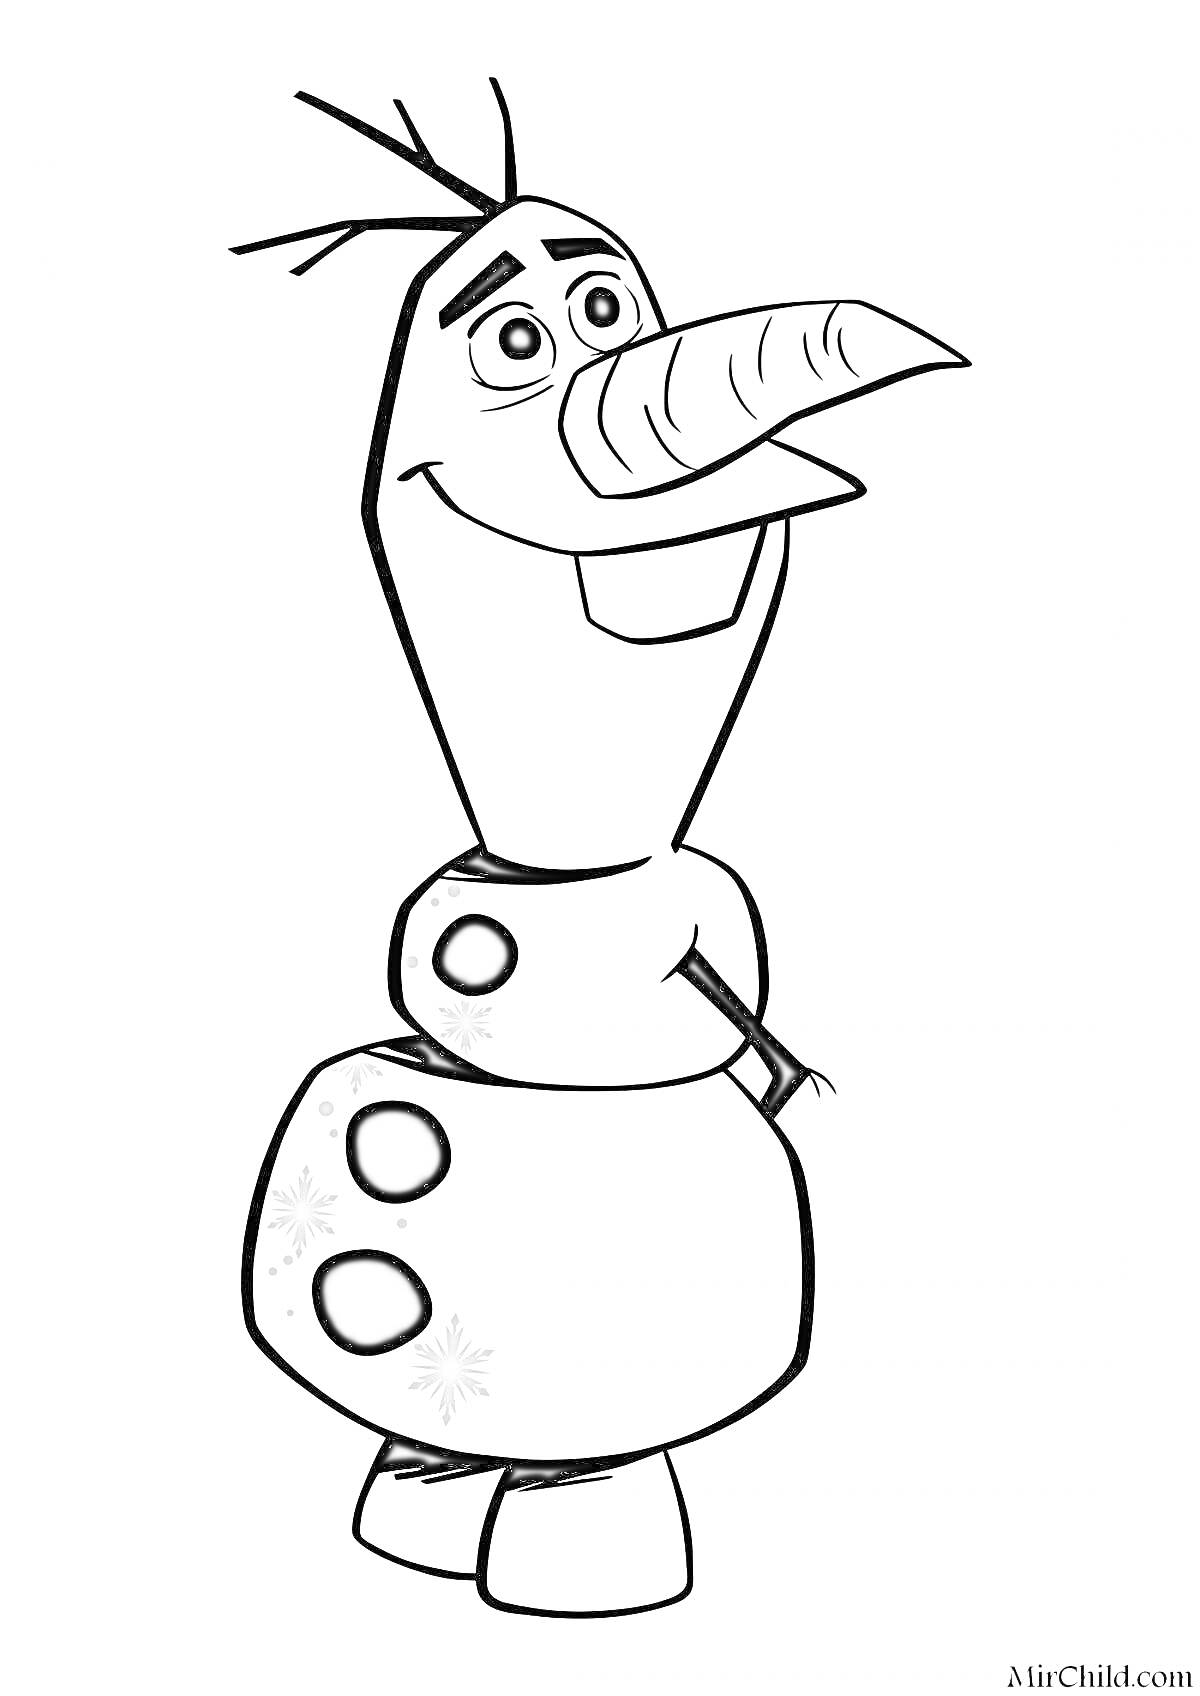 Раскраска Олаф с морковным носом, веточками на голове, двумя пуговицами и снежинками на животе